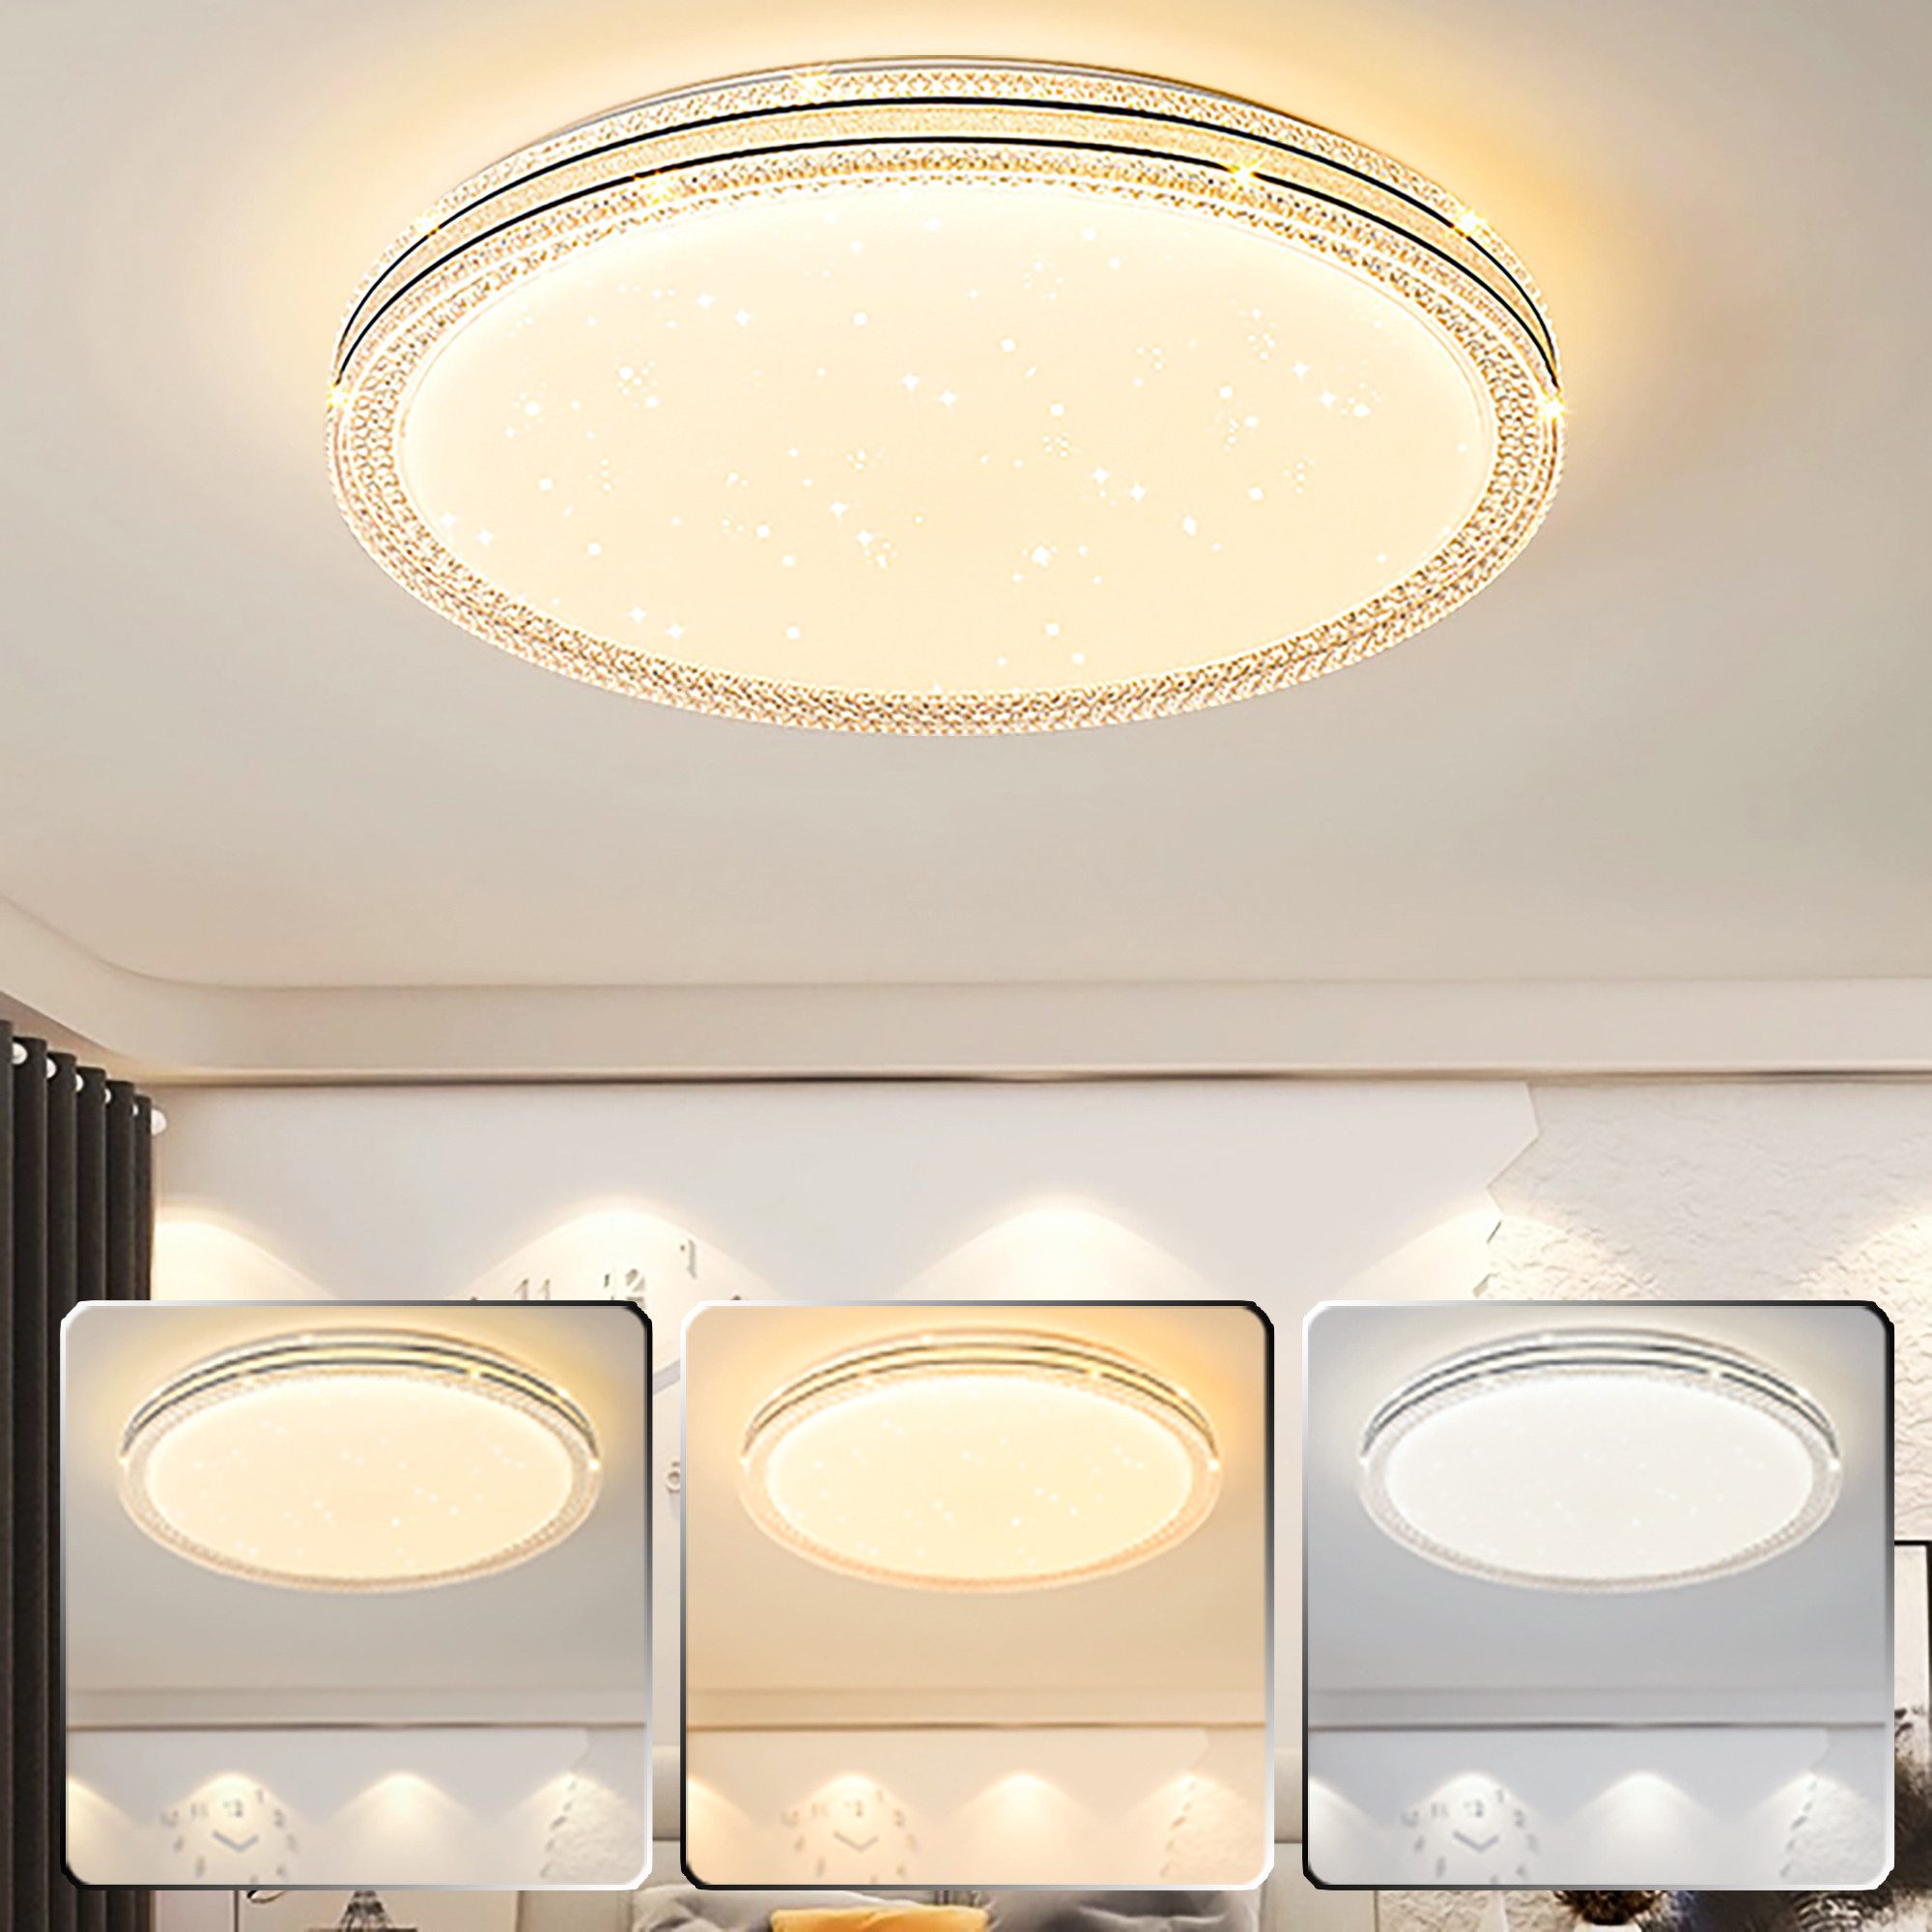 KUGI Deckenleuchten Deckenlampe LED Deckenleuchte Flach 2x36W,3000K-6000K,Ø35cm/Ø45cm, Badlampe Decke Küchenlampen für Bad/Schlafzimmer/Keller/Balkon